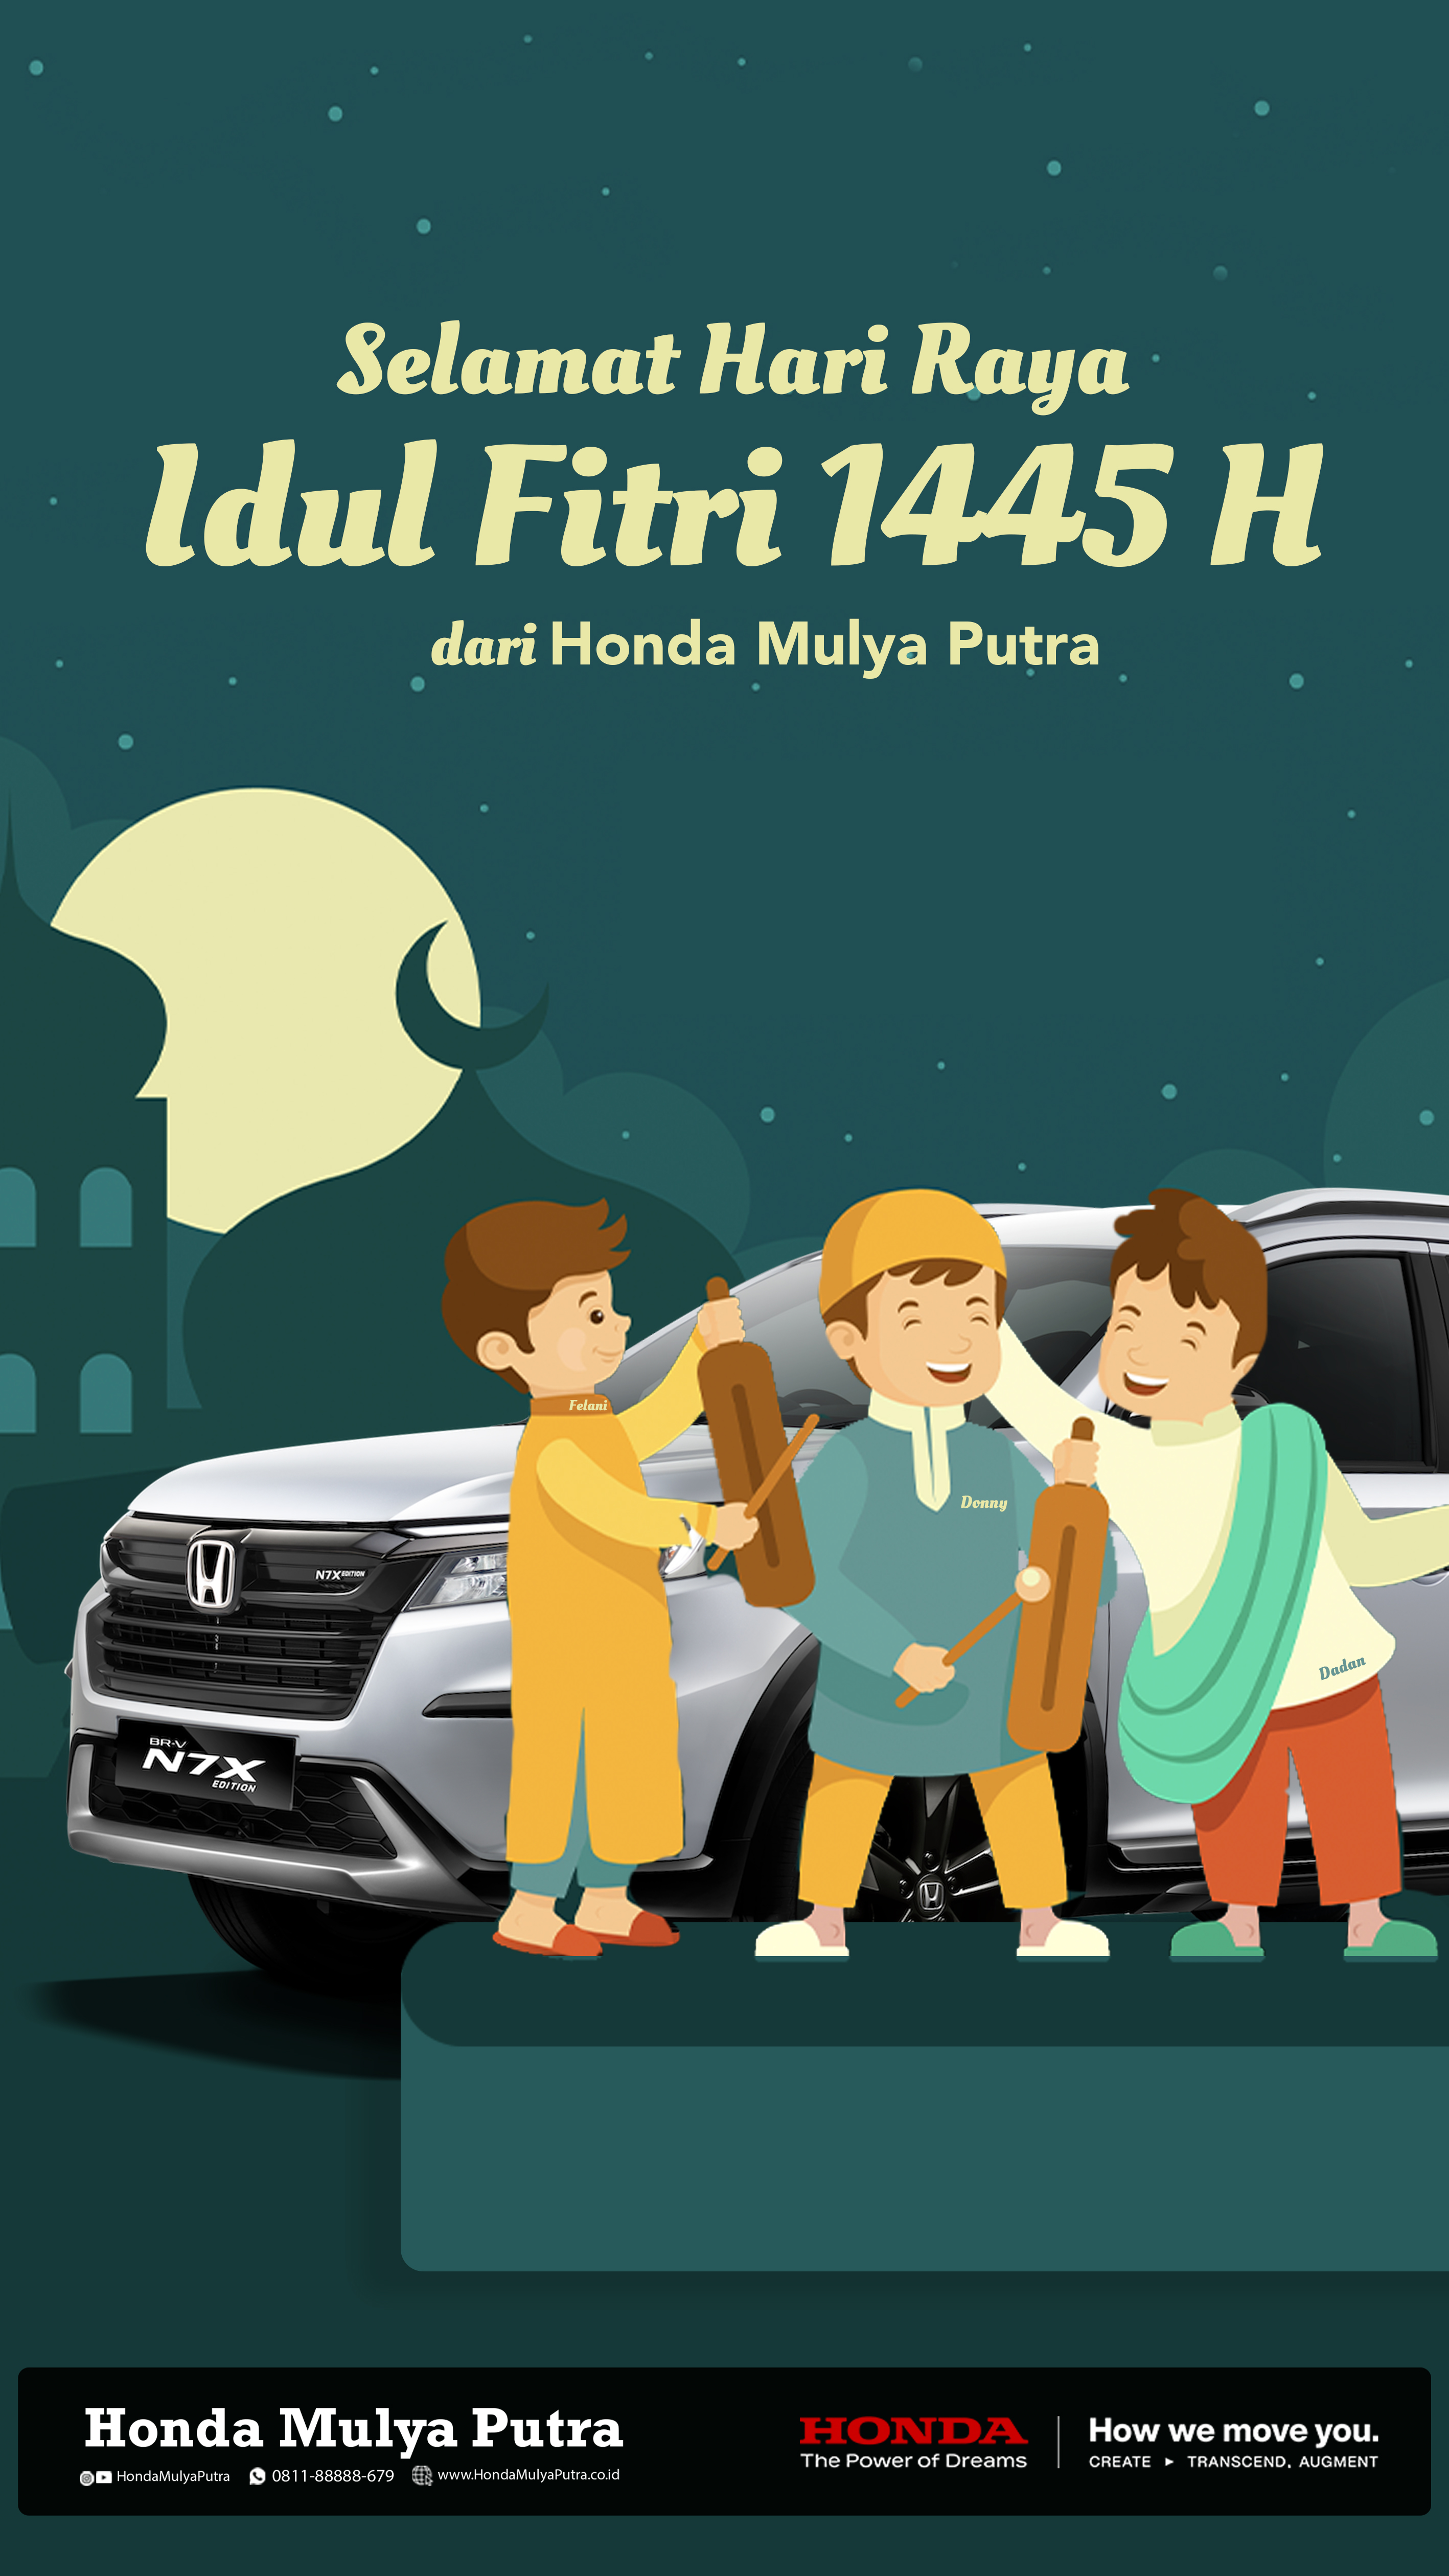 Hari Raya, Yeay! Honda Mulya Putra Turut Mengucapkan Minal Aidzin Wal Faidzin, Mohon Maaf Lahir Dan Batin!